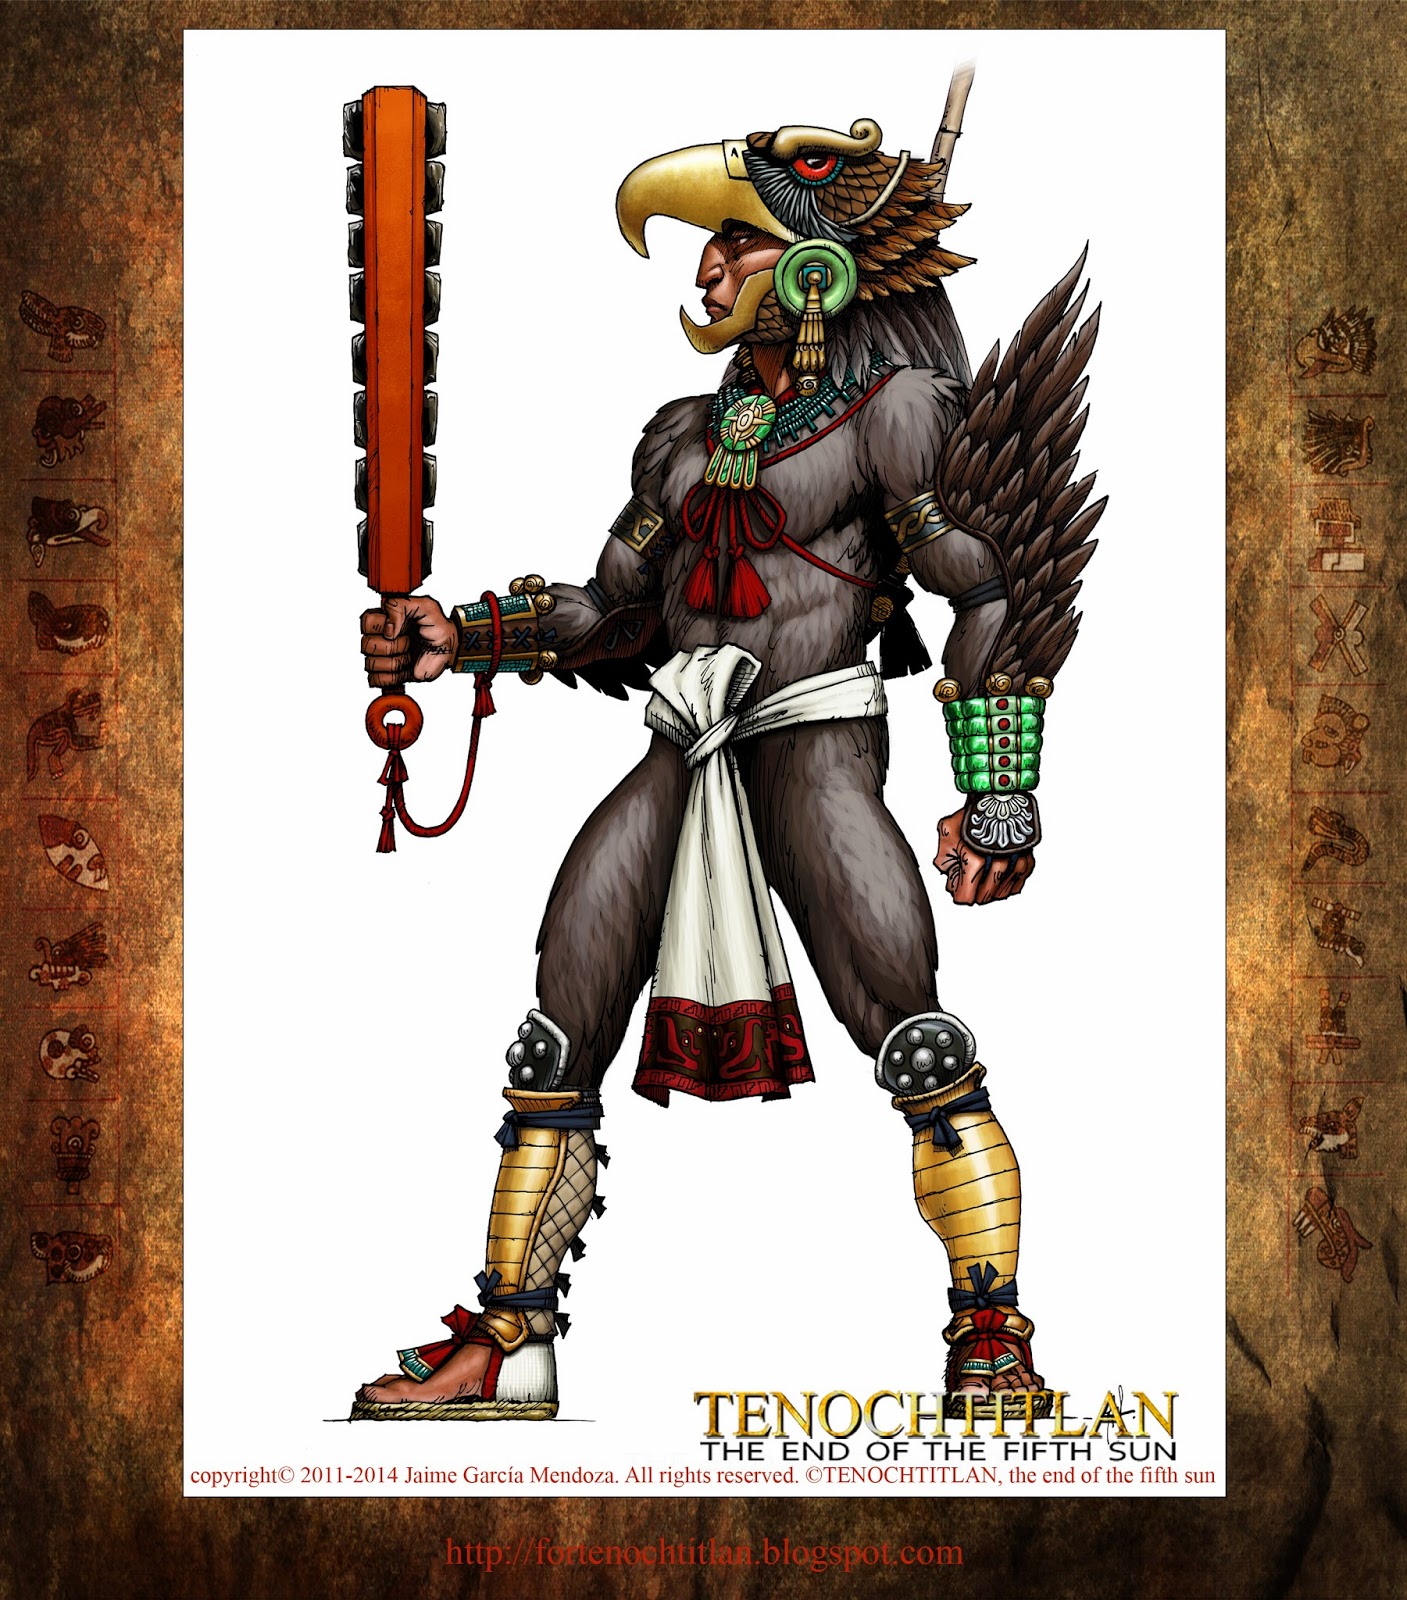 For Tenochtitlan, relation of a graphic novel: The Aztec Eagle Warrior / El  Guerrero Águila Azteca